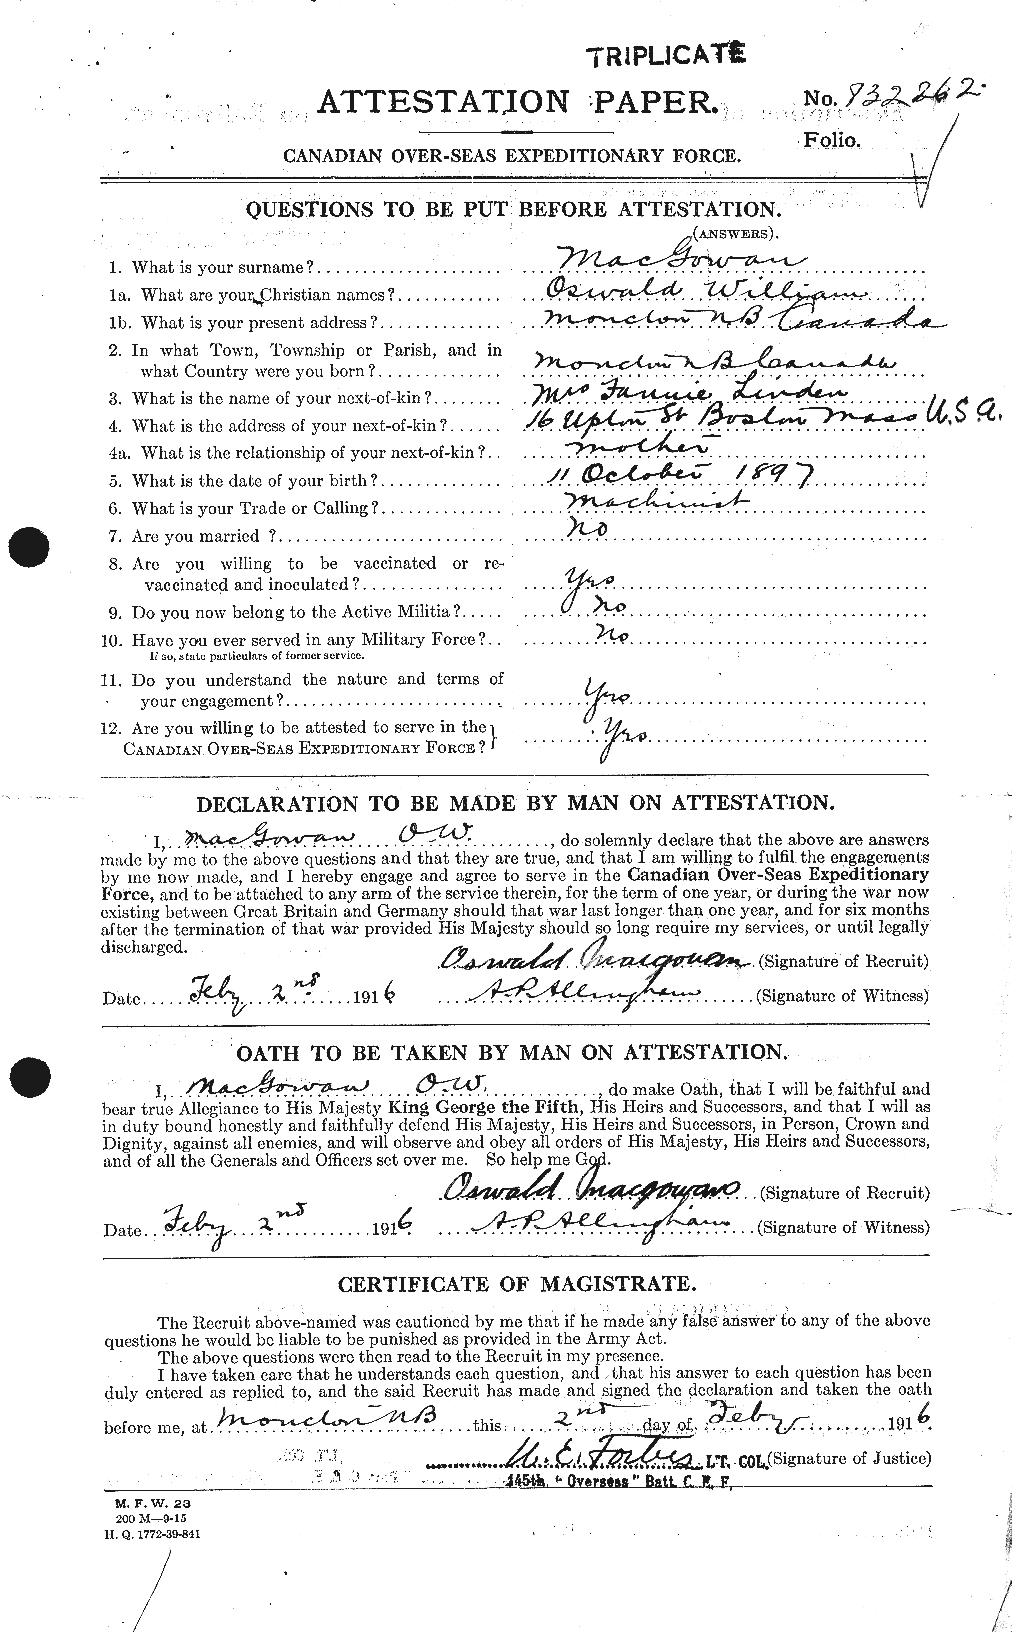 Dossiers du Personnel de la Première Guerre mondiale - CEC 523196a